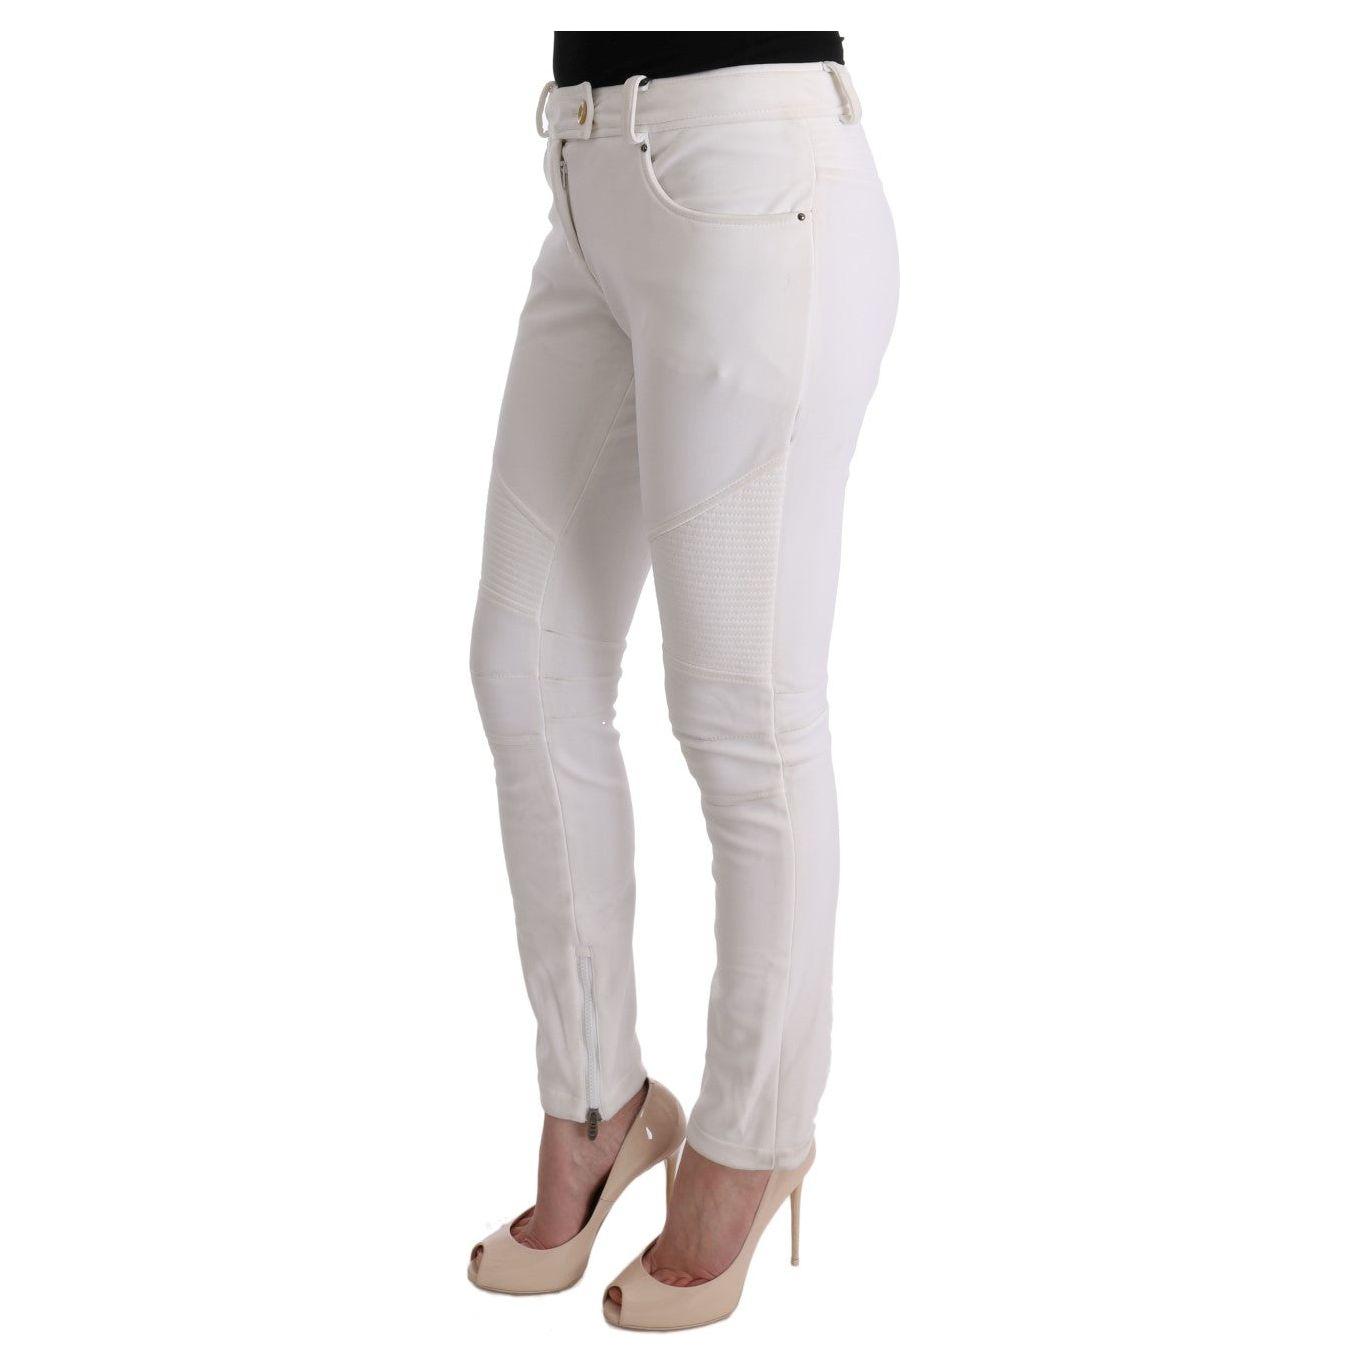 Ermanno Scervino Chic White Slim Fit Cotton Pants white-cotton-slim-fit-casual-pants-1 449212-white-cotton-slim-fit-casual-pants-2-1.jpg